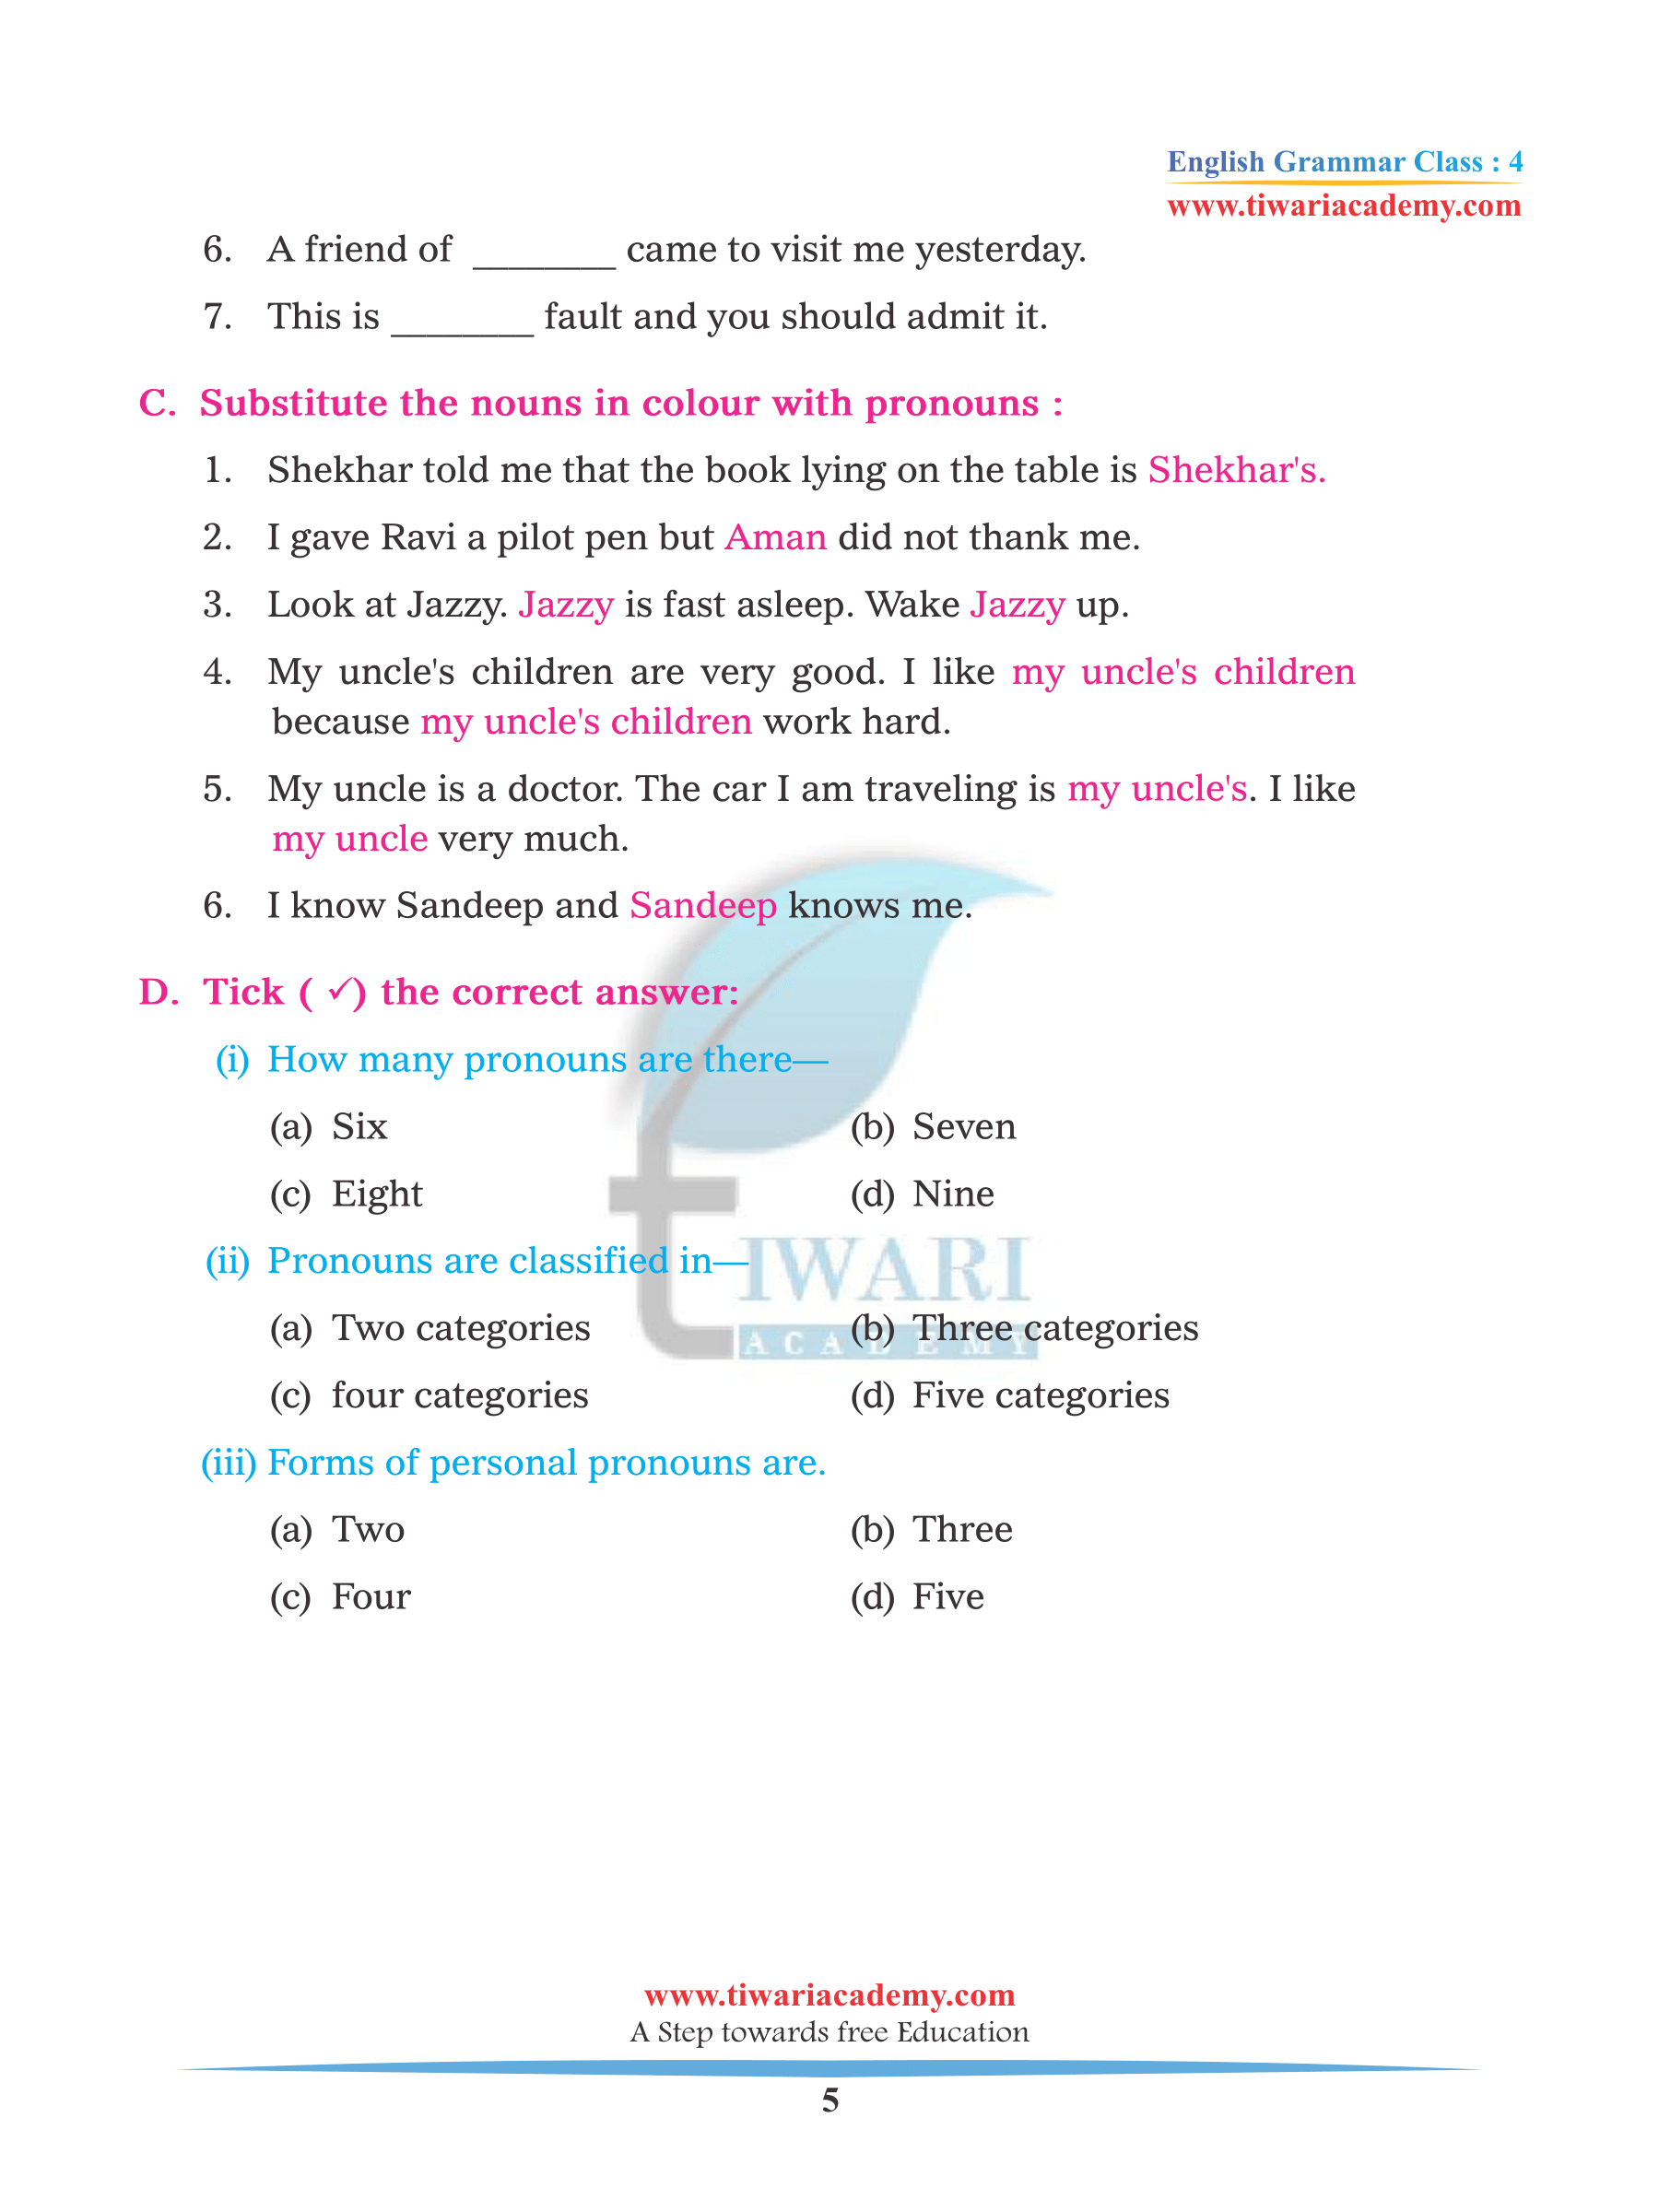 Class 4 English Grammar Chapter 7 Pronoun assignments